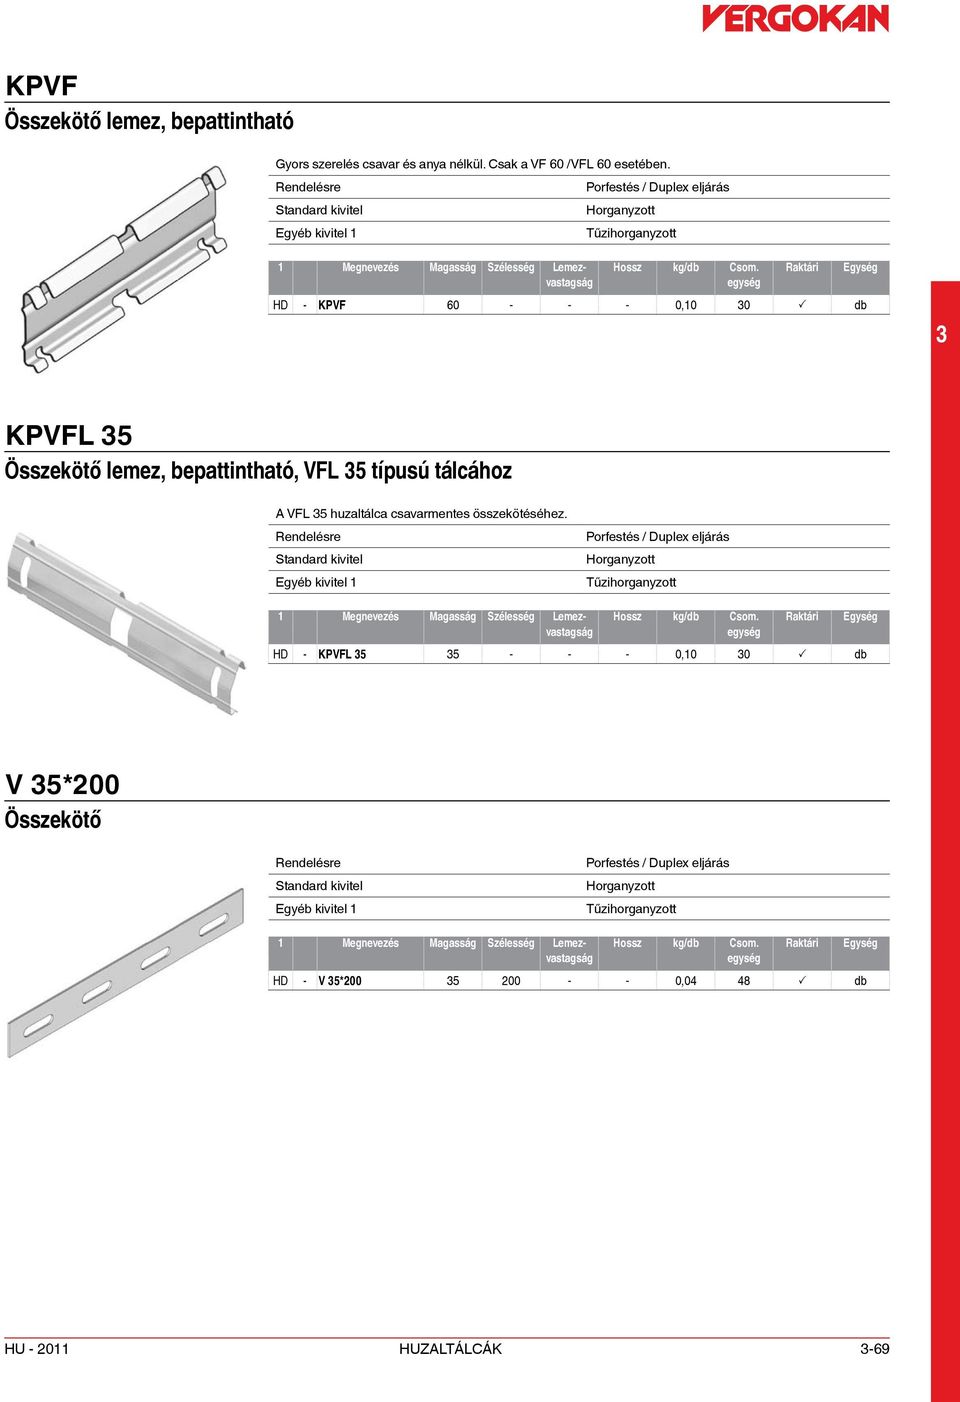 HD - KPVF 60 - - - 0,10 0 P db KPVFL 5 Összekötő lemez, bepattintható, VFL 5 típusú